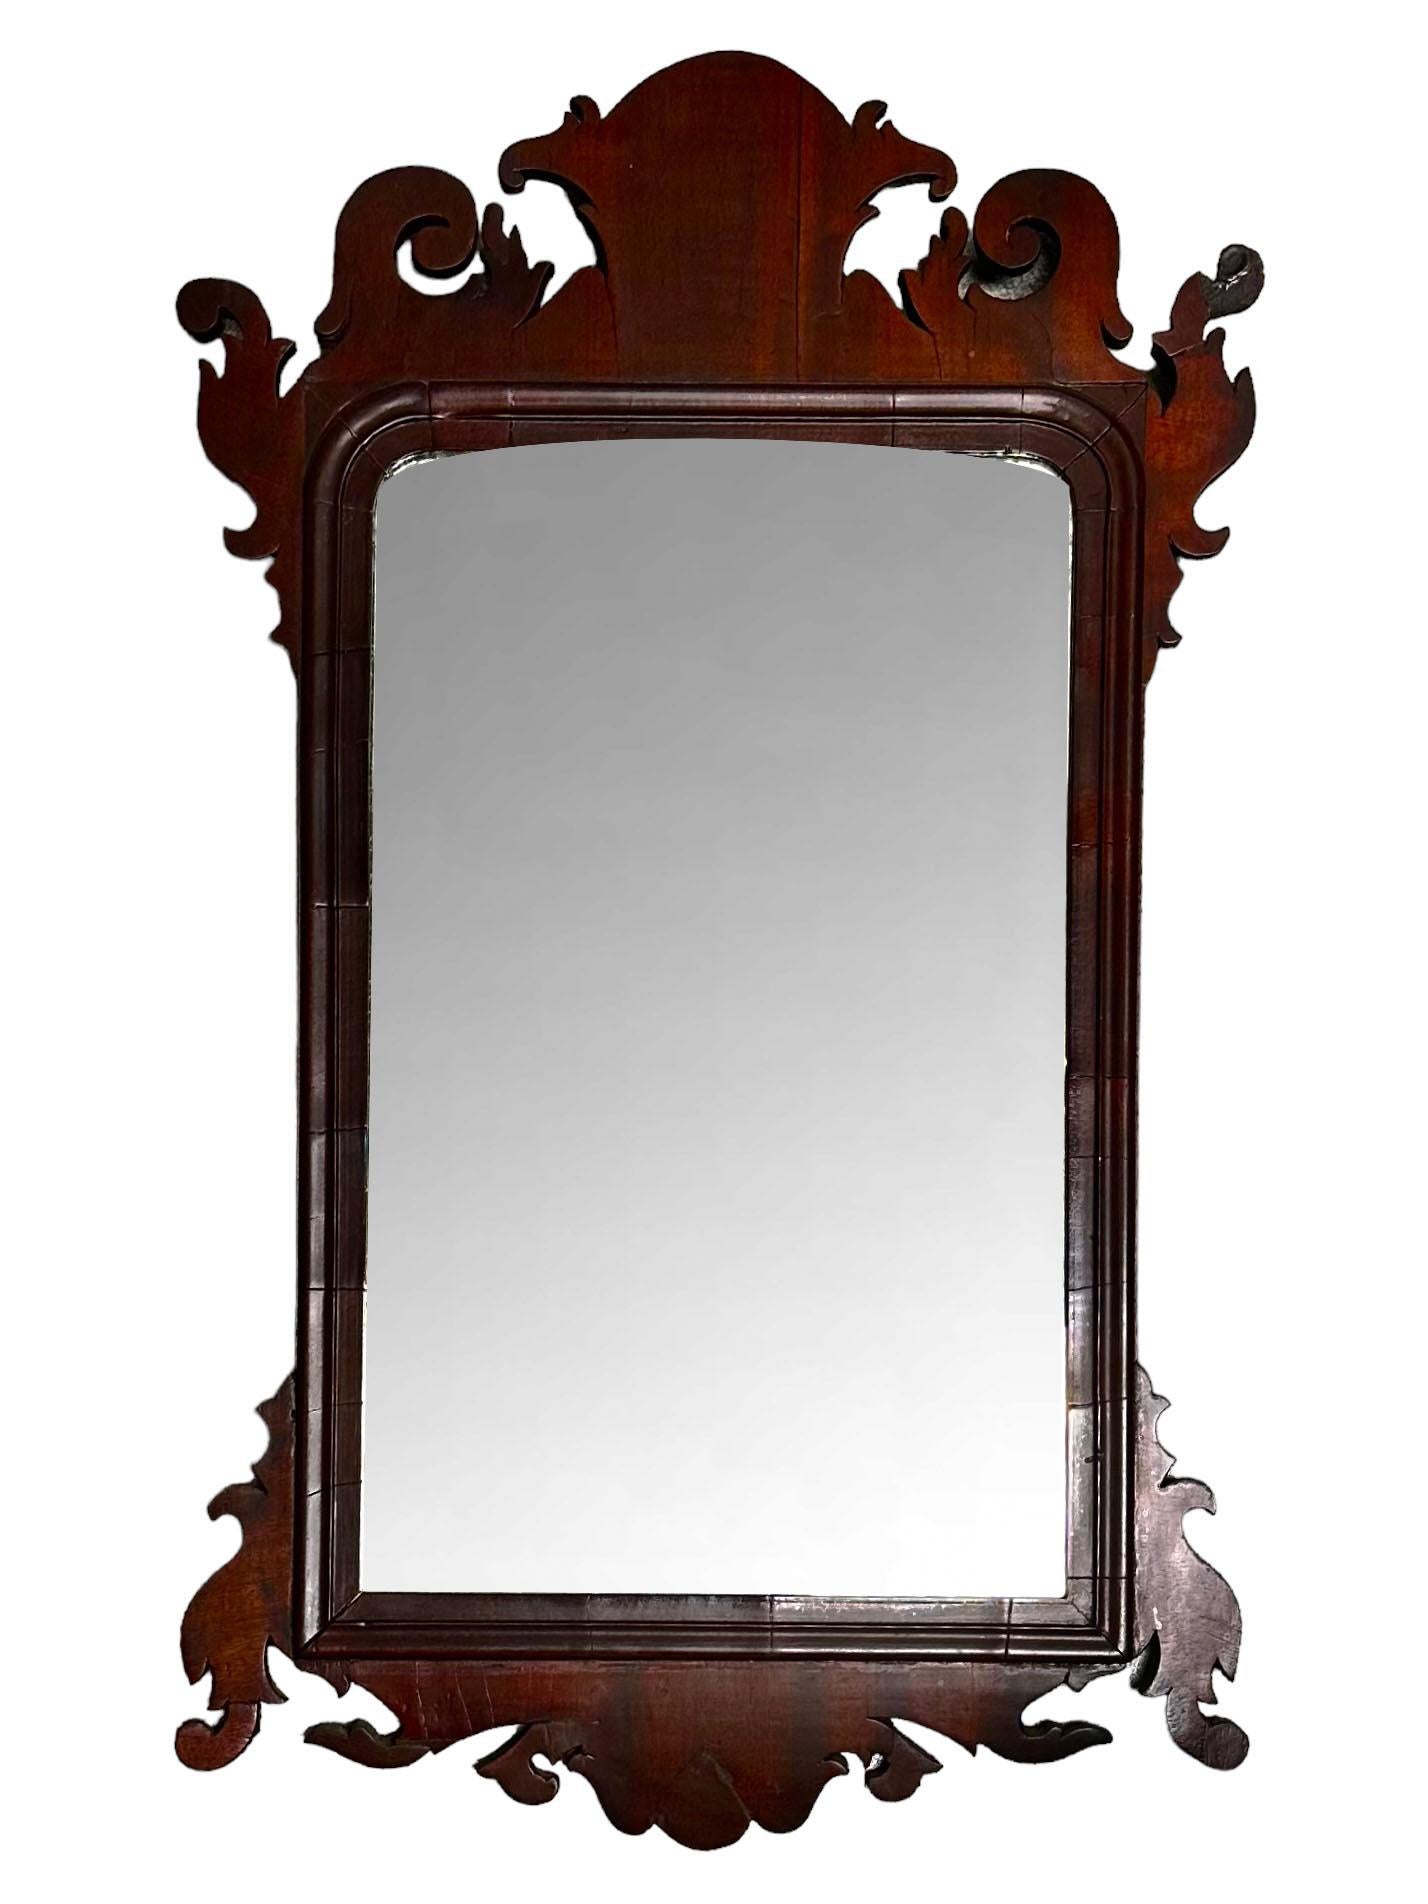 Ein amerikanischer Holzspiegel aus dem späten 18. Jahrhundert mit seinem Originalglas. Die Rückseite und alles sieht original aus. Nur einige der Nägel, die die Rückseite halten, wurden ersetzt. Amerikanisch.